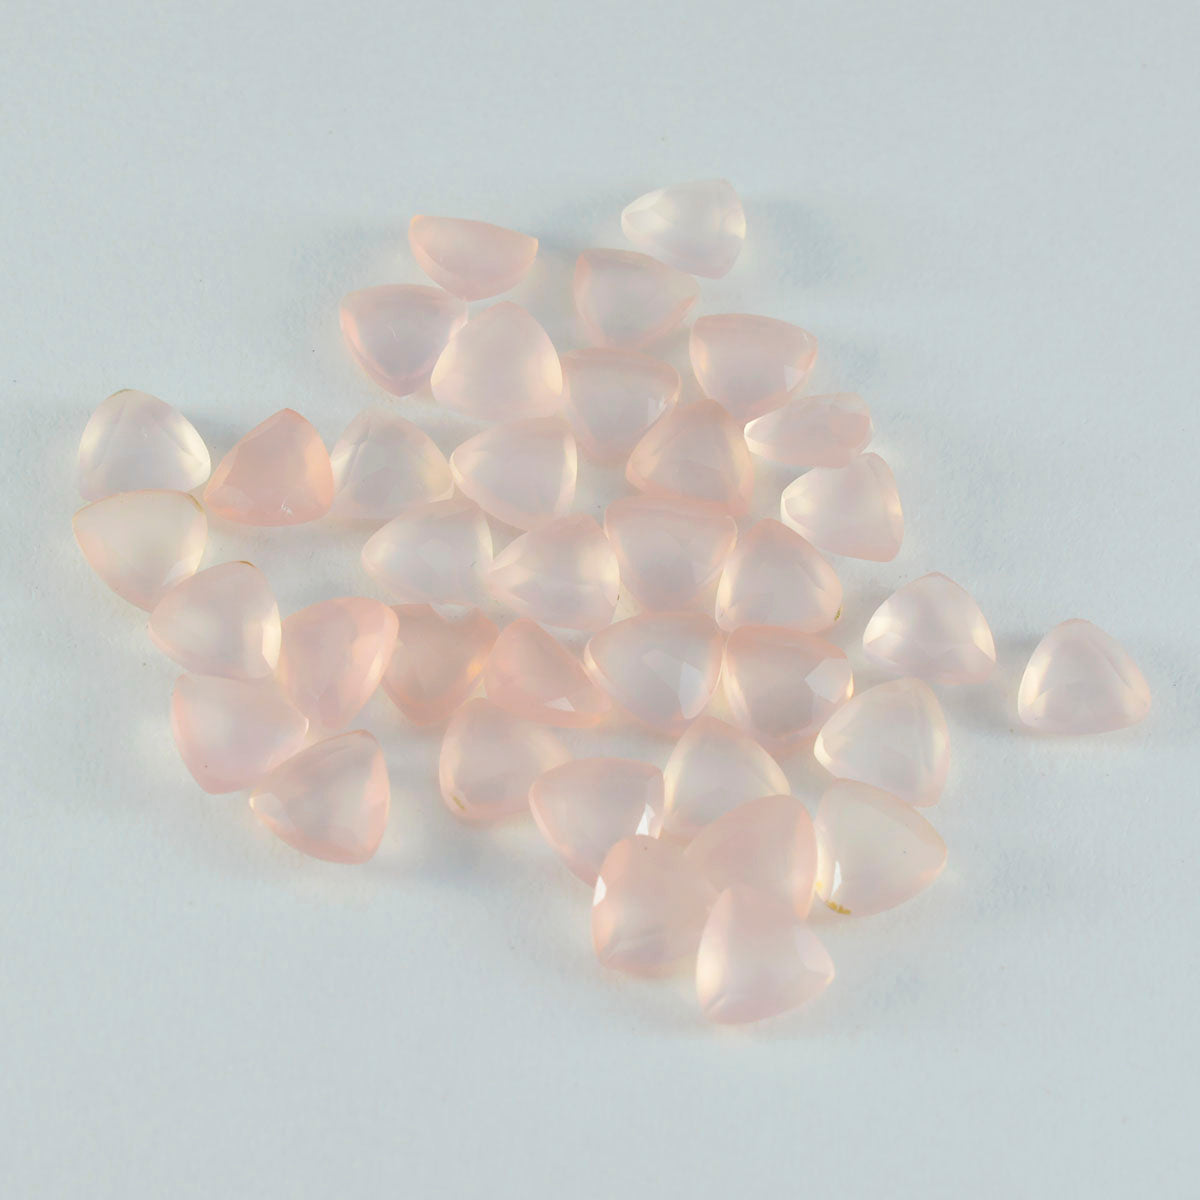 riyogems 1шт розовый кварц ограненный 6x6 мм форма триллион качественный свободный драгоценный камень